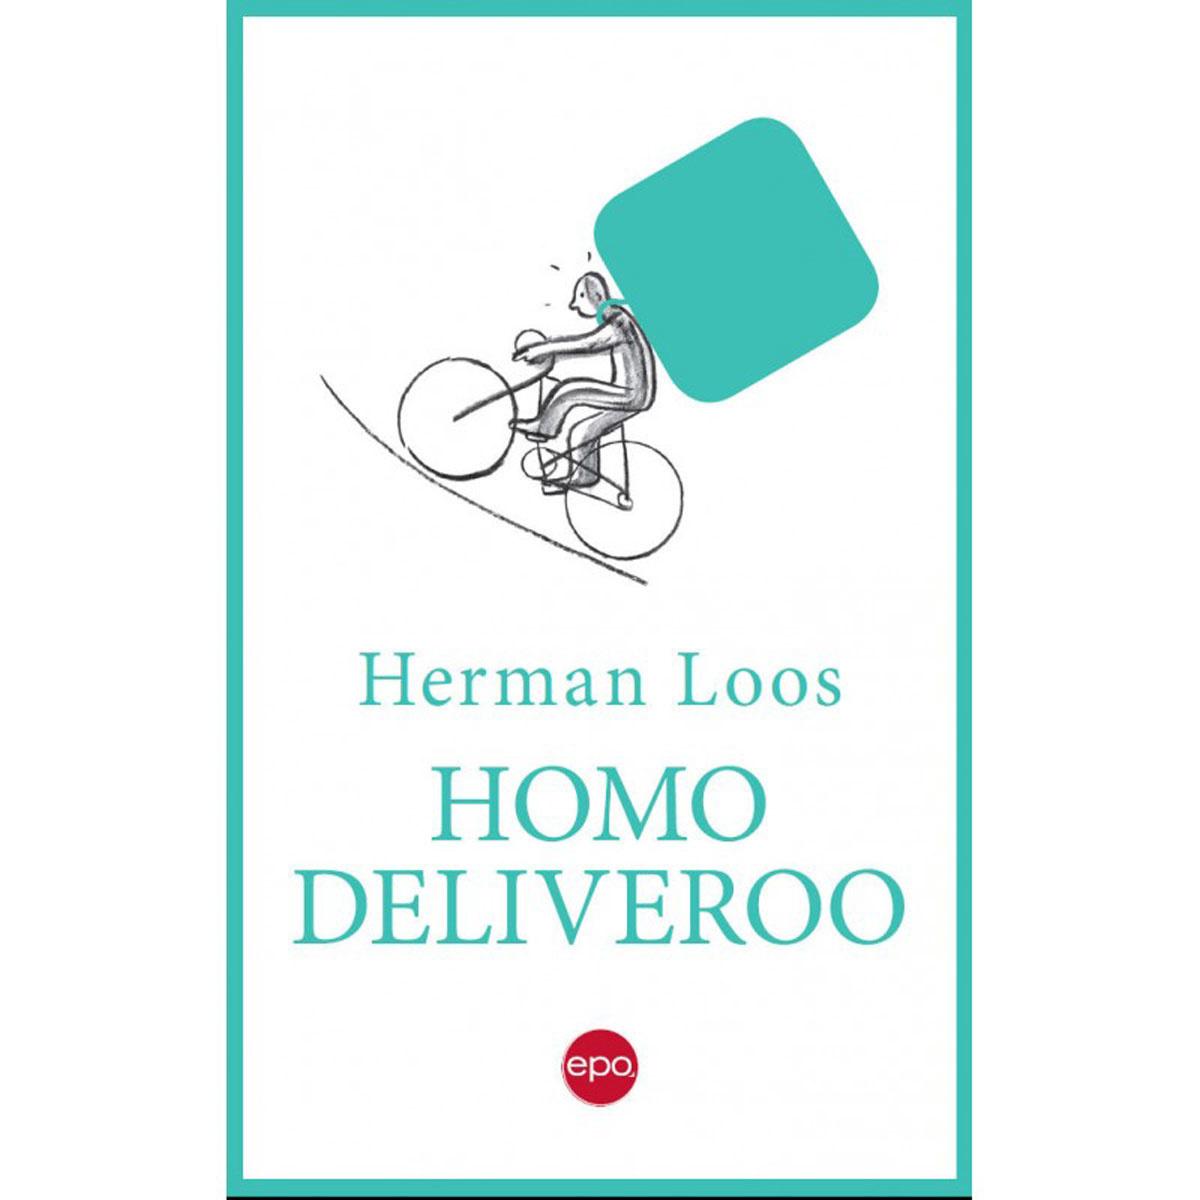 'Een jaar lang ondervond auteur Herman Loos als maaltijdkoerier van Deliveroo wat het betekent zelfstandige te zijn zonder autonomie'